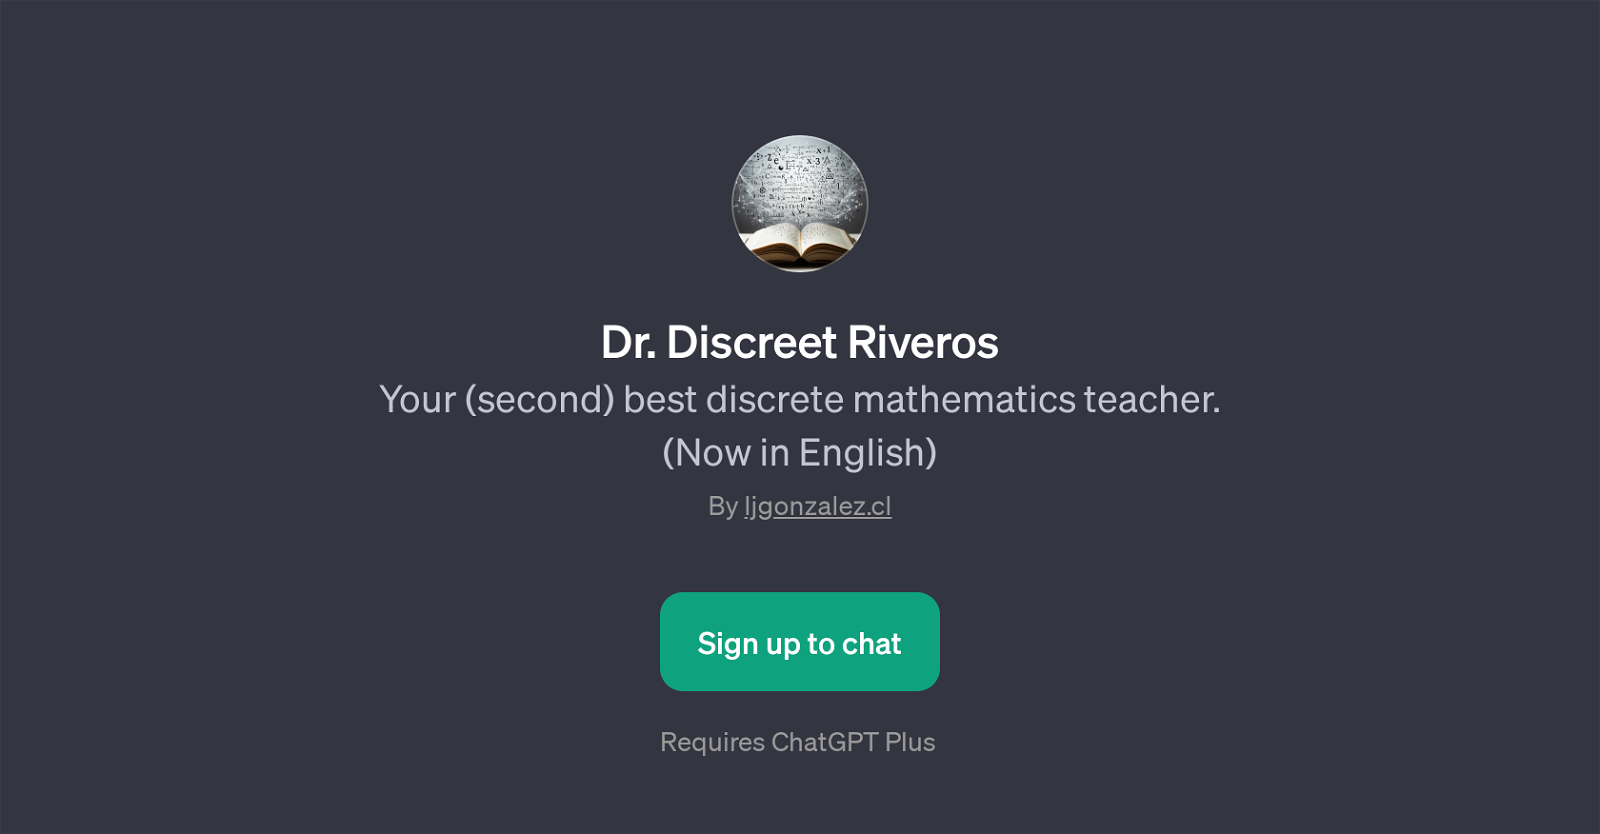 Dr. Discreet Riveros website